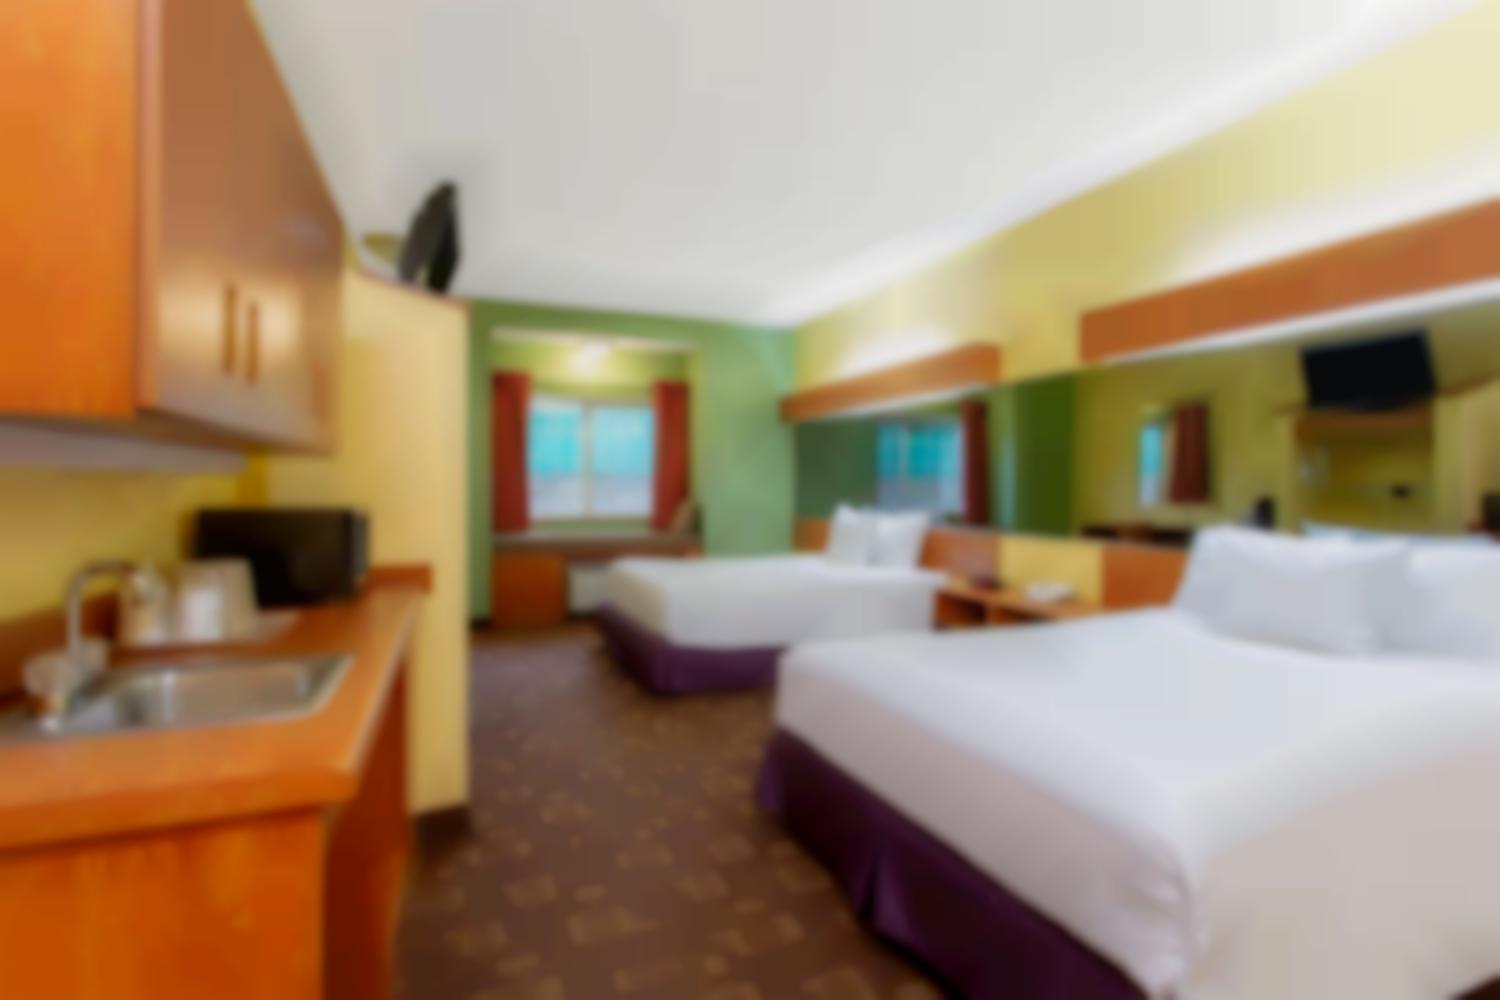 Microtel Inn & Suites by Wyndham Charlotte/Northlake